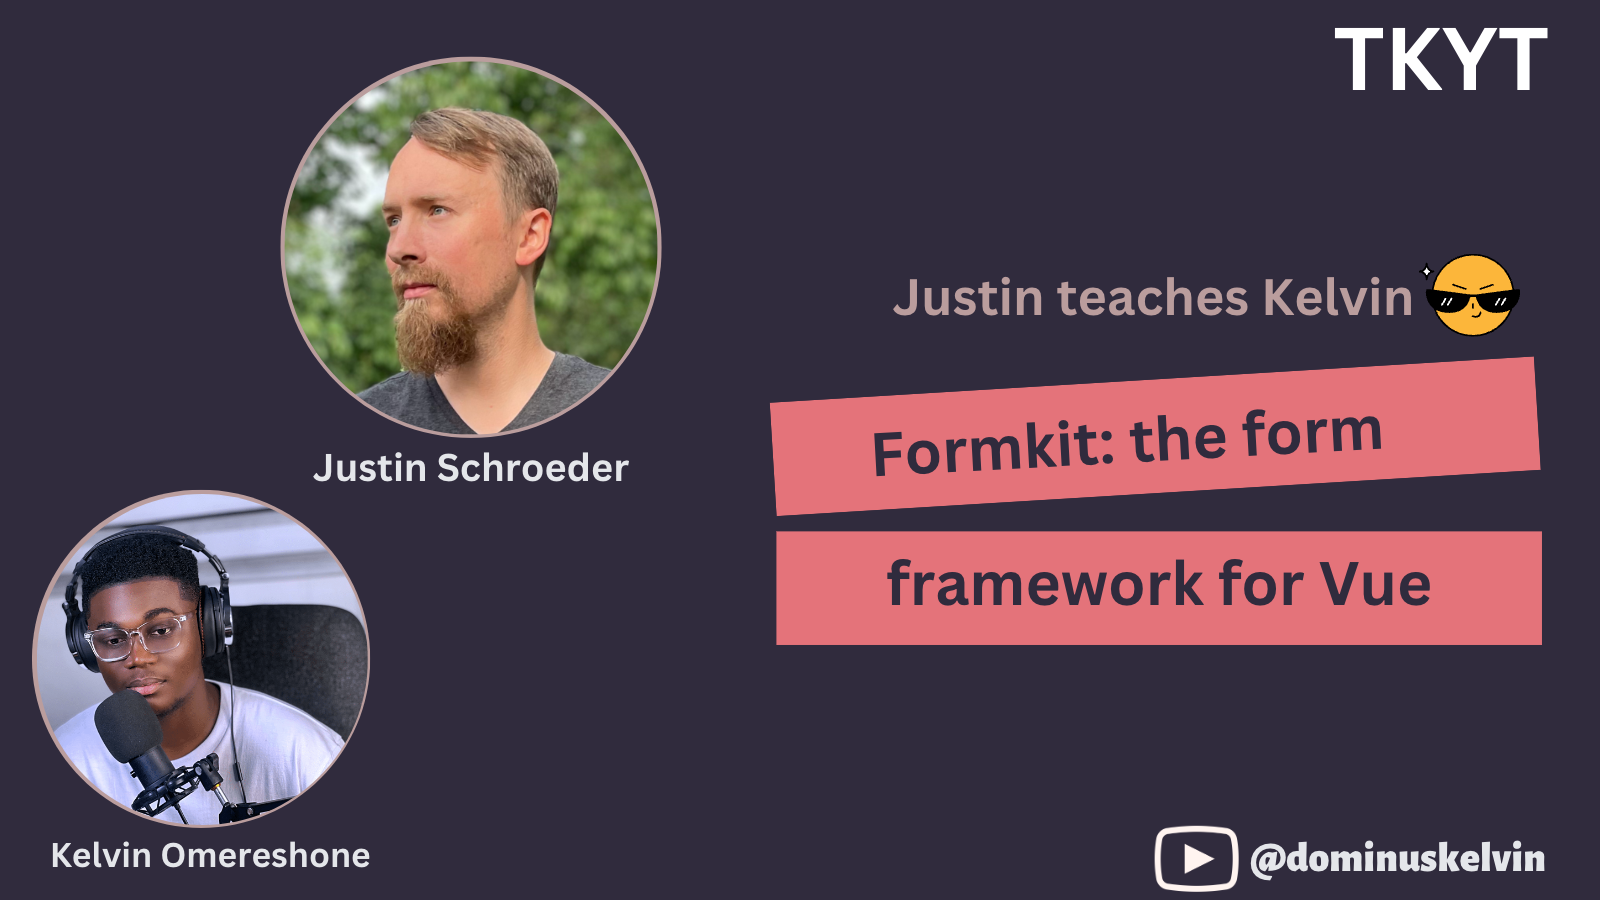 Formkit: the form framework for Vue